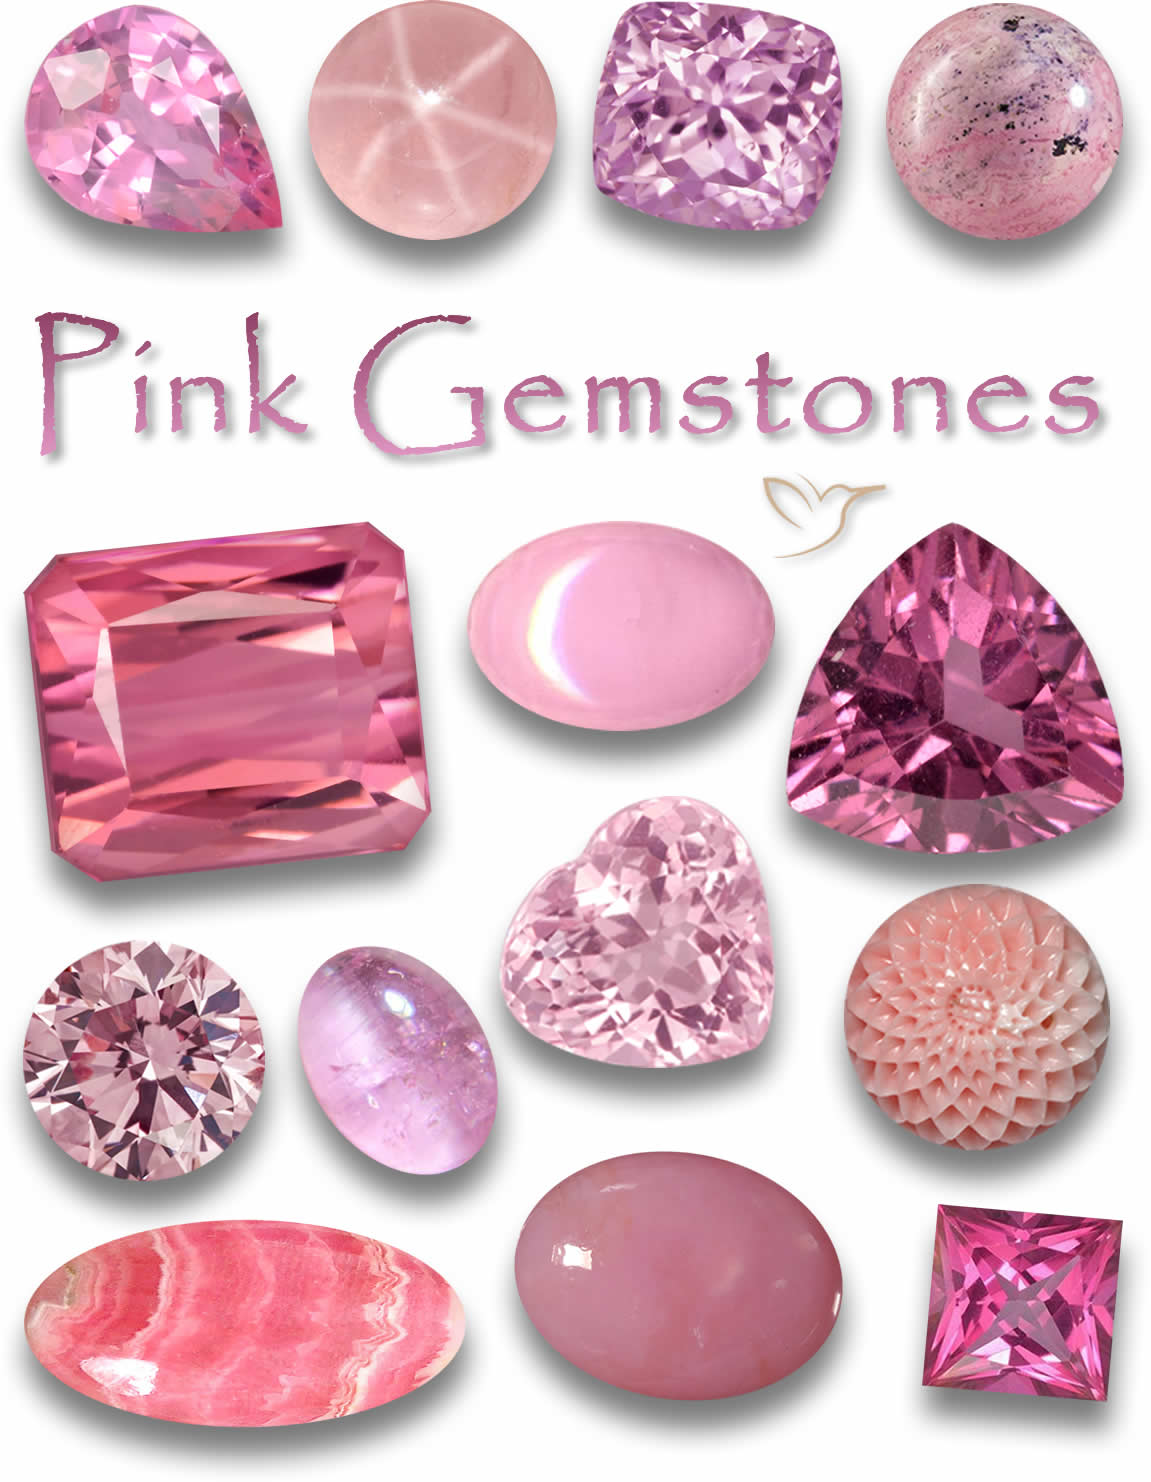 Pierres précieuses roses - Liste des pierres roses avec images et